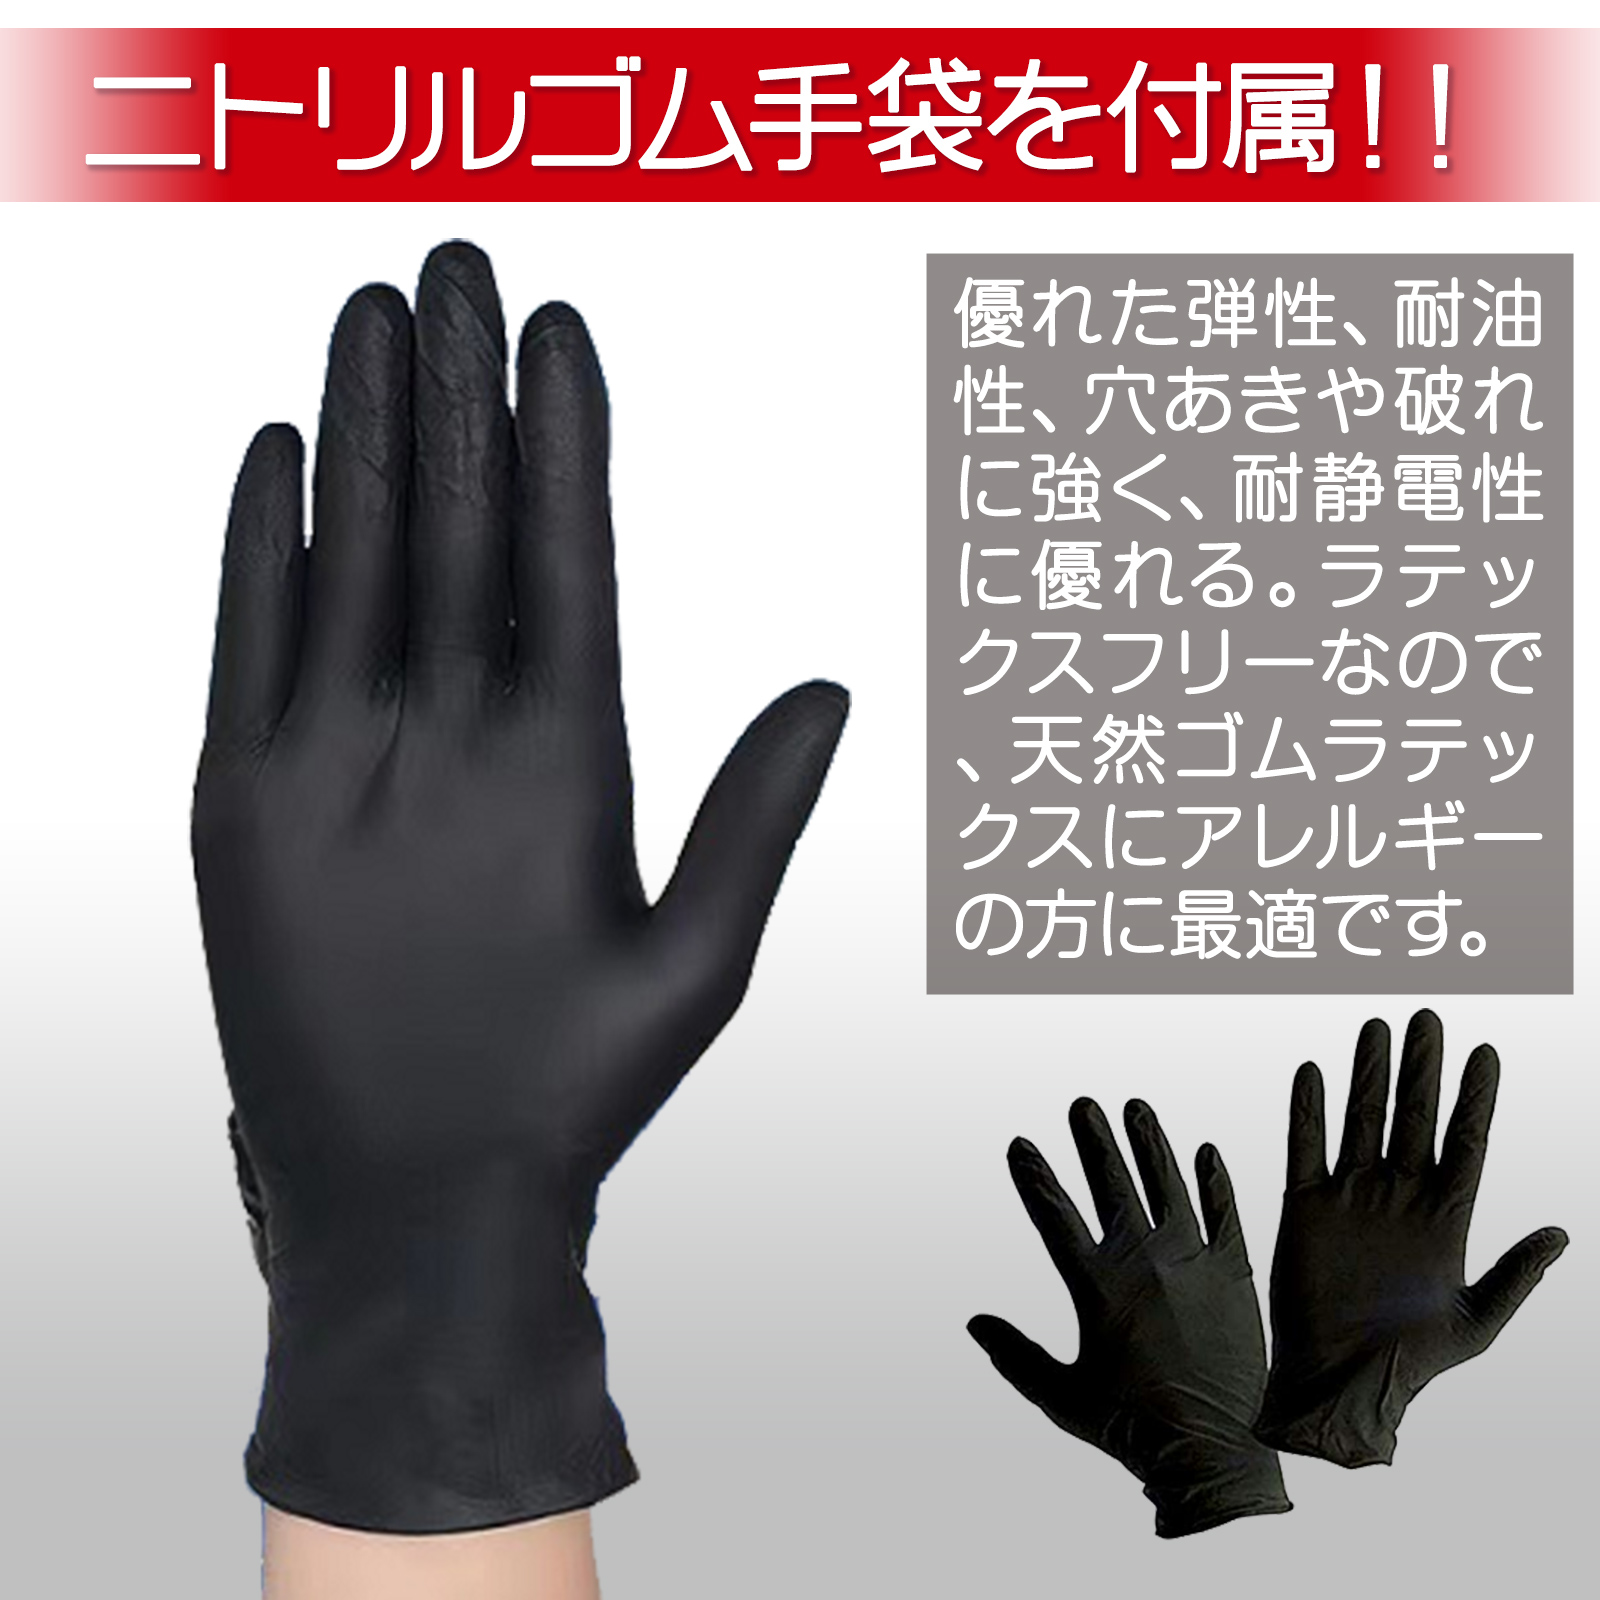 耐久性・耐油性・耐静電性、手袋付属 